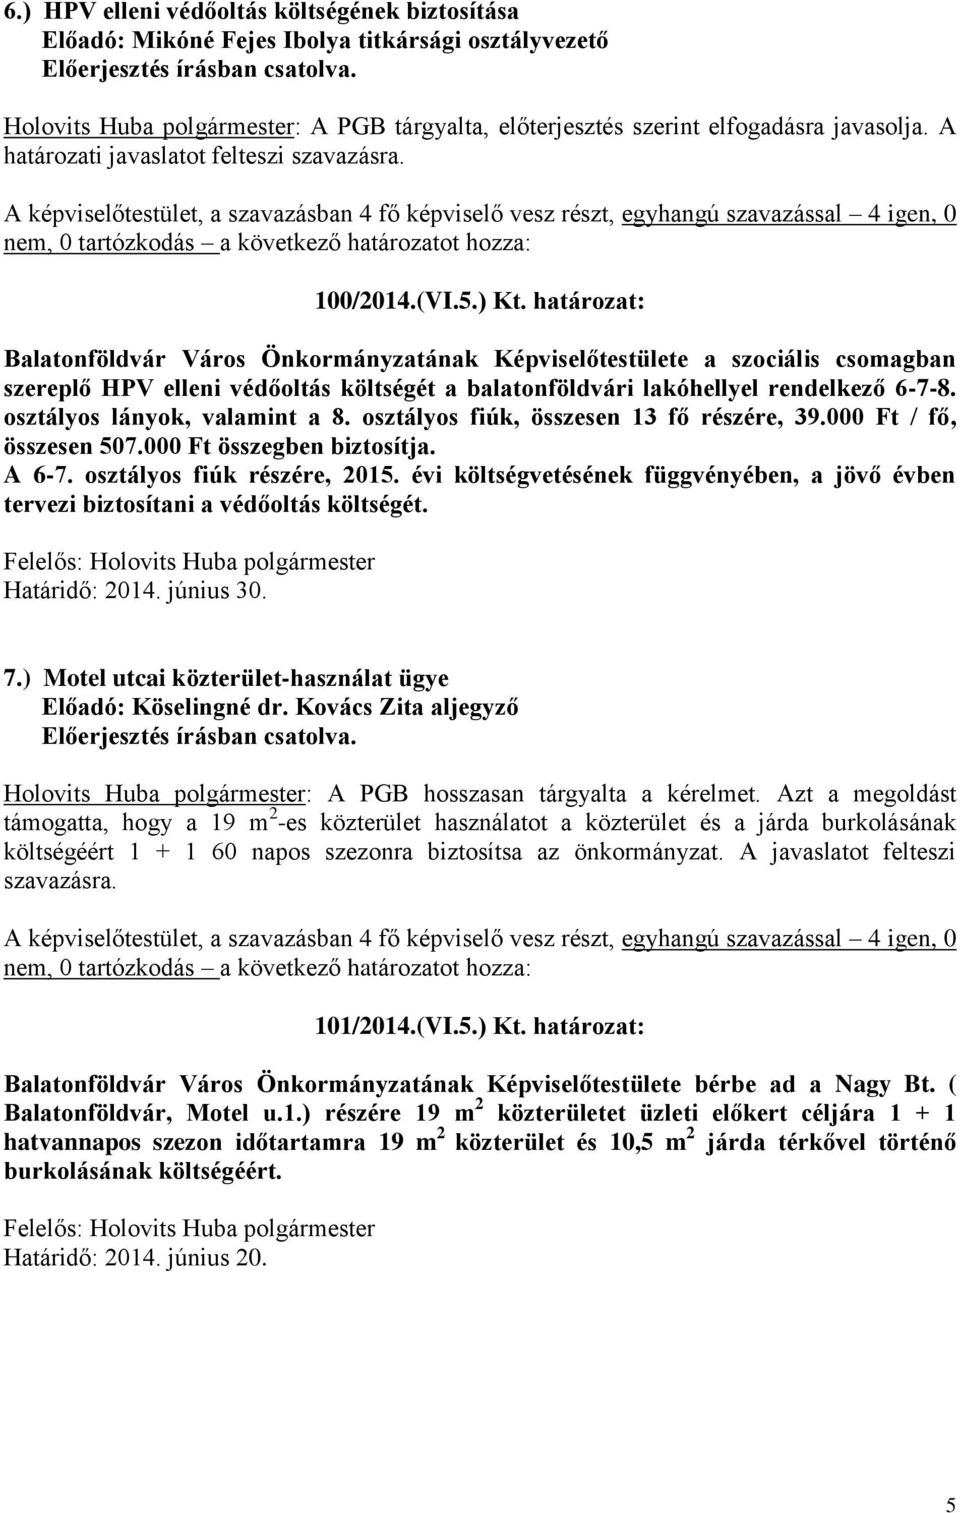 határozat: Balatonföldvár Város Önkormányzatának Képviselőtestülete a szociális csomagban szereplő HPV elleni védőoltás költségét a balatonföldvári lakóhellyel rendelkező 6-7-8.